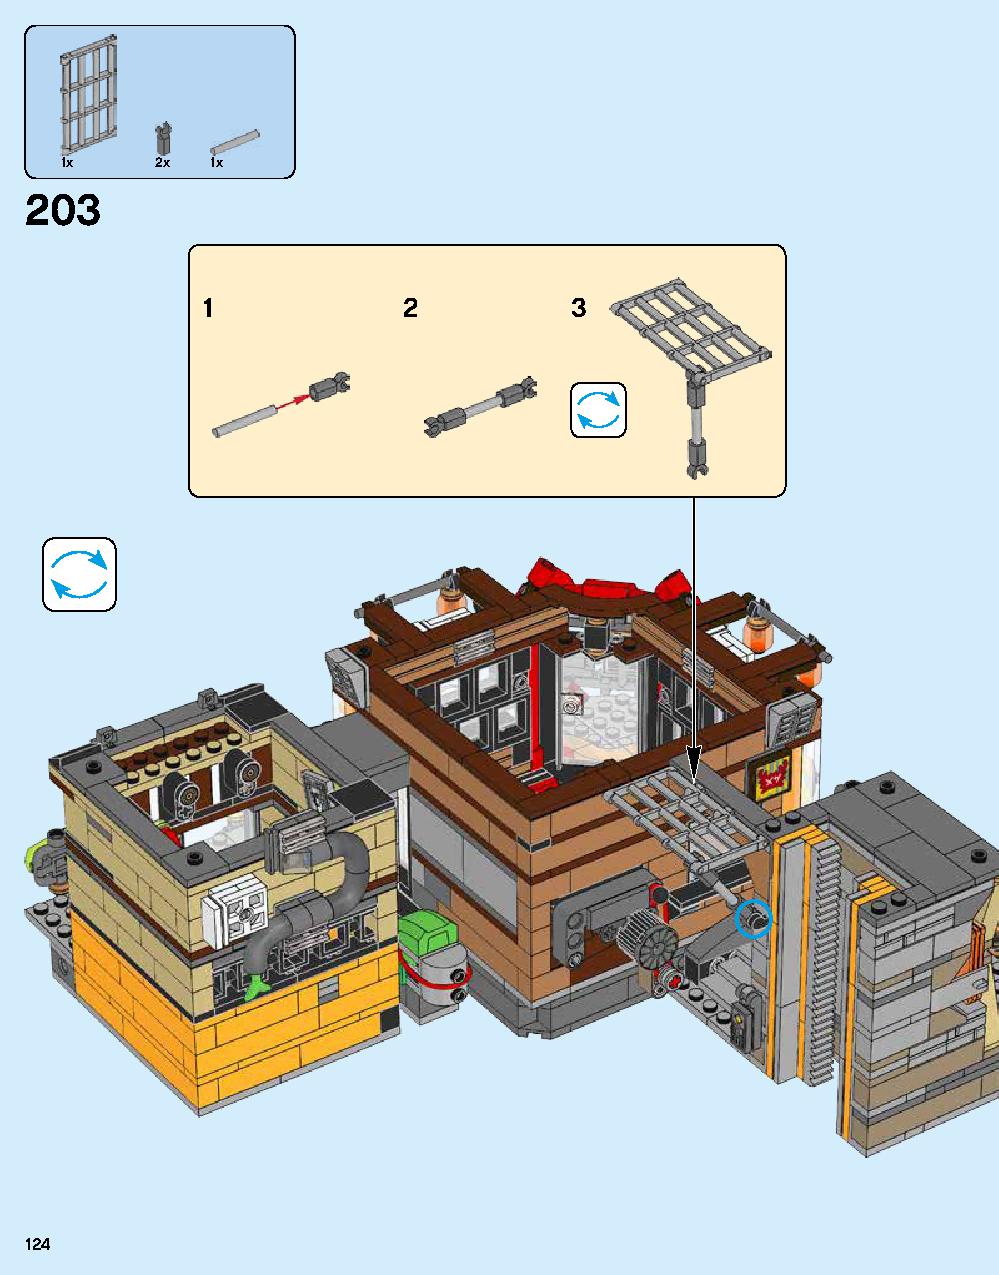 ニンジャゴー シティ 70620 レゴの商品情報 レゴの説明書・組立方法 124 page